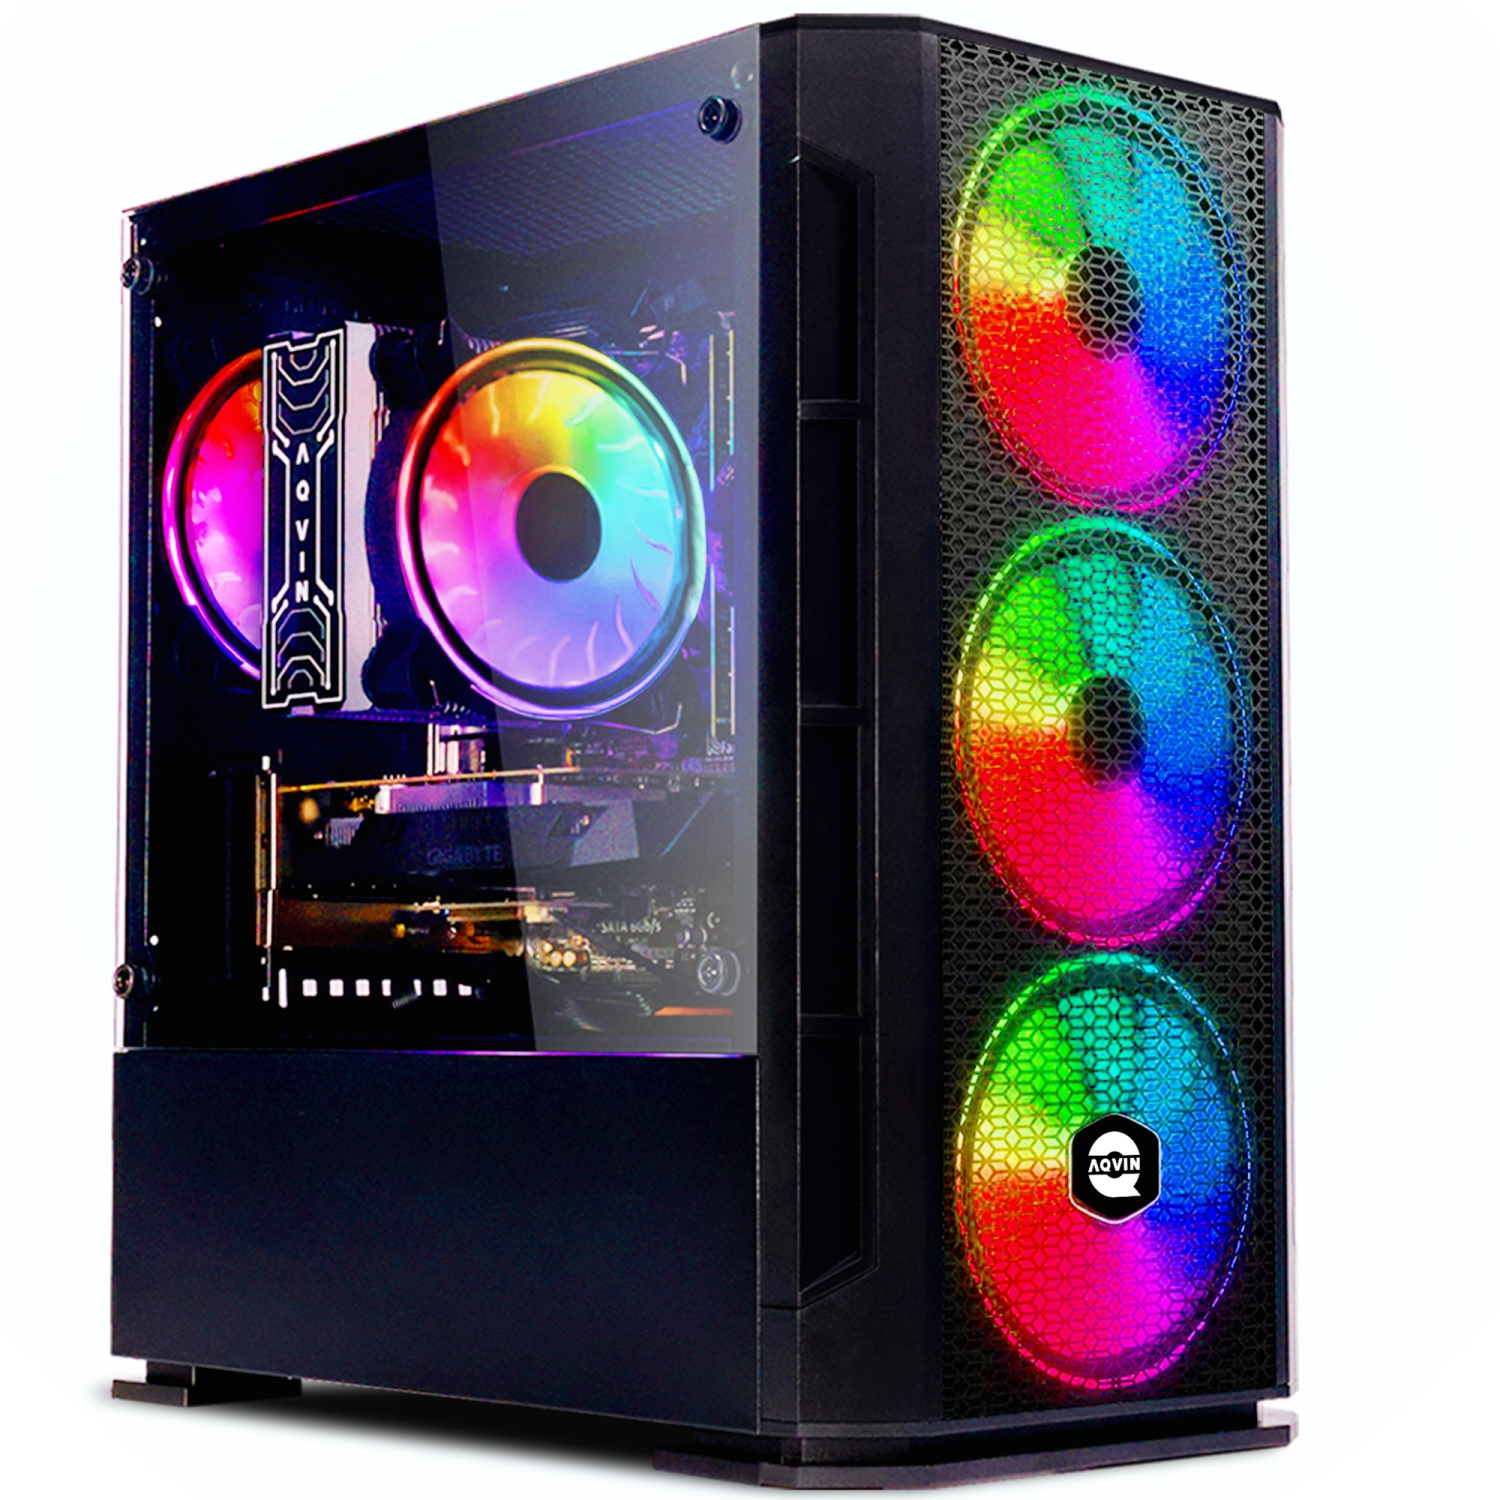 Gaming PC AQVIN AQ10 Desktop Computer Tower - RGB Fan Lights/ Intel Core i7 CPU/ 2TB SSD (fast boot)/ 32GB RAM/ GeForce GTX 1660 Super GPU| WIN 10 Pro| WIFI ready - 1 year Warranty